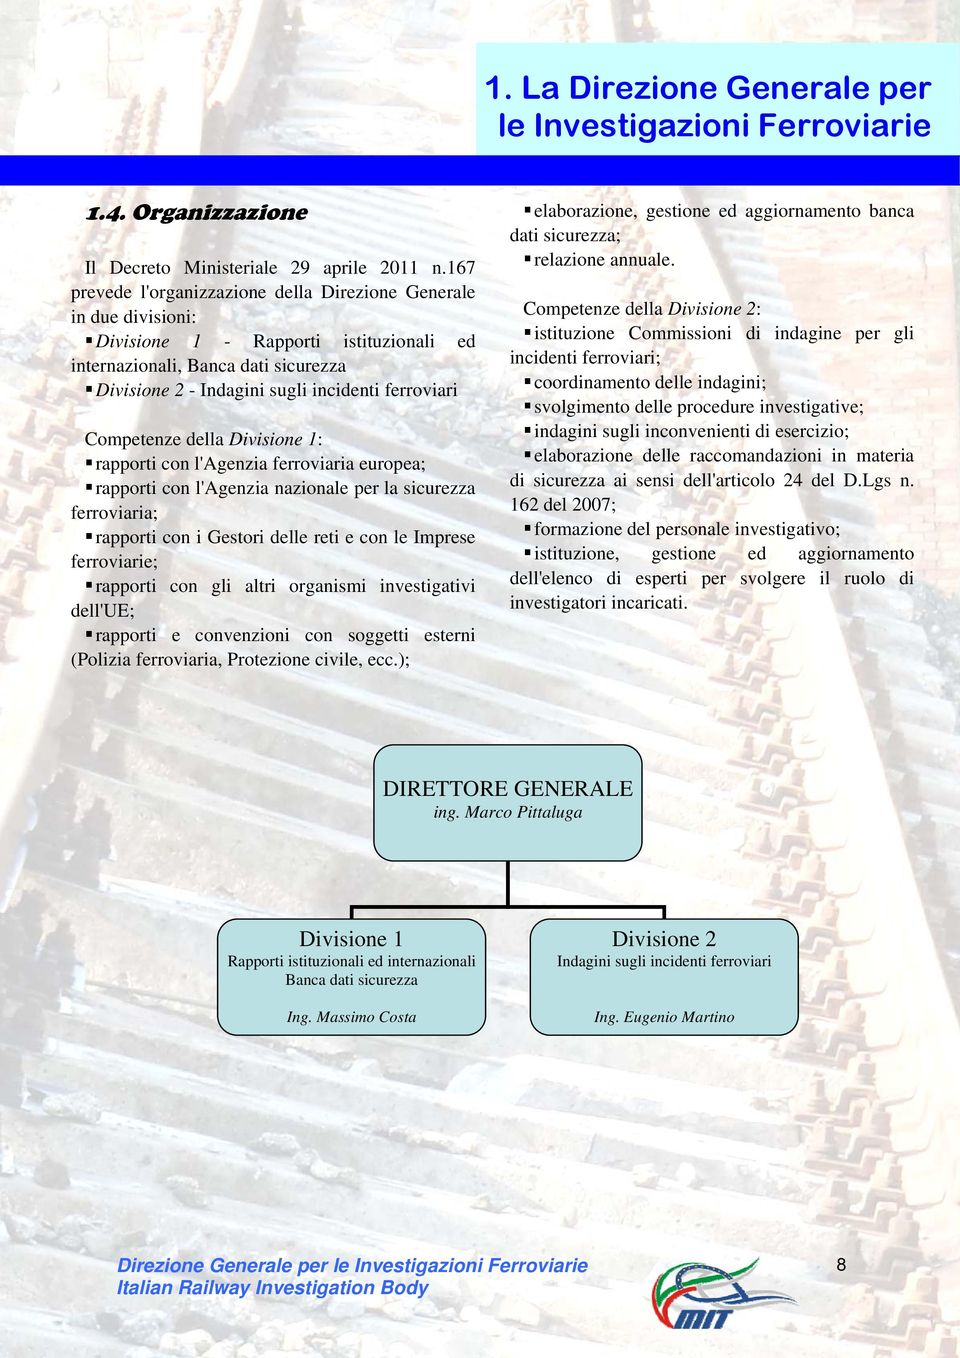 Competenze della Divisione 1: rapporti con l'agenzia ferroviaria europea; rapporti con l'agenzia nazionale per la sicurezza ferroviaria; rapporti con i Gestori delle reti e con le Imprese